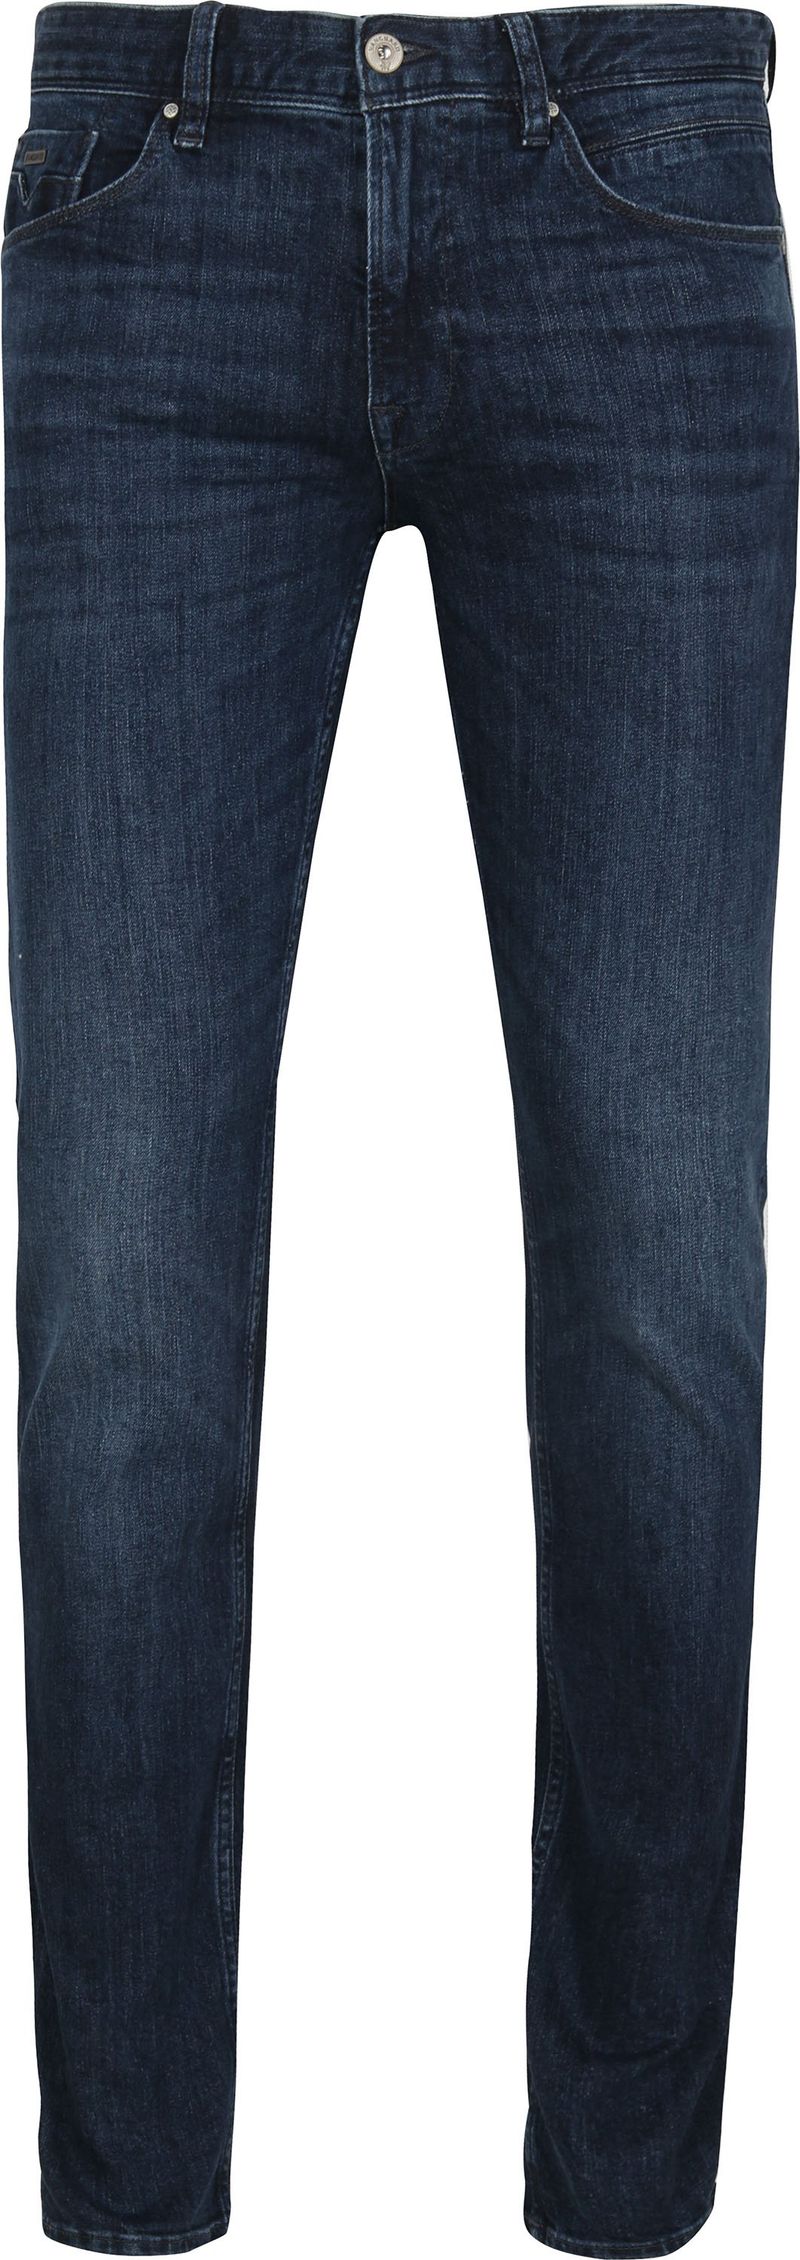 Vanguard Jeans V7 Rider Steel Washed Blau - Größe W 33 - L 34 günstig online kaufen